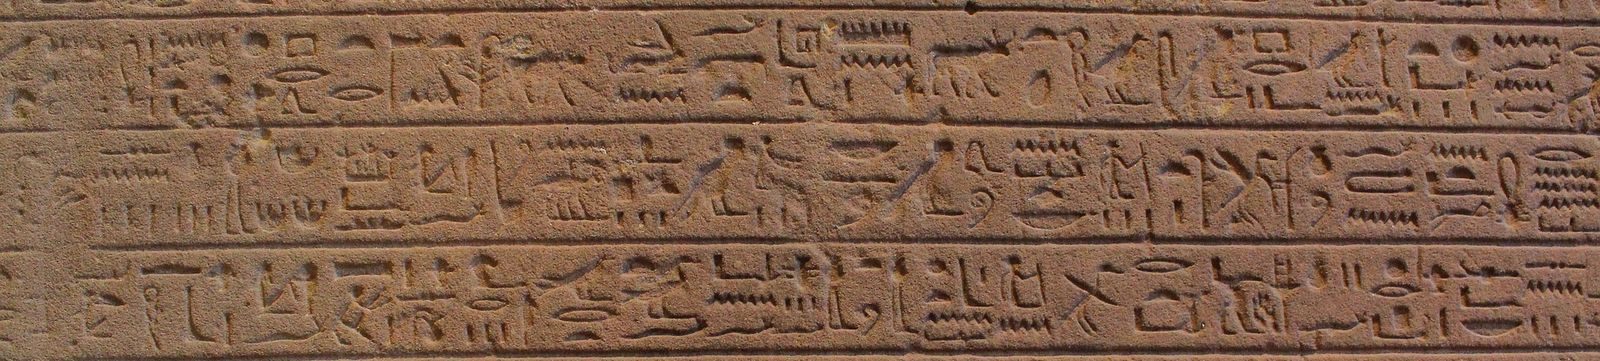 Koptské písmo